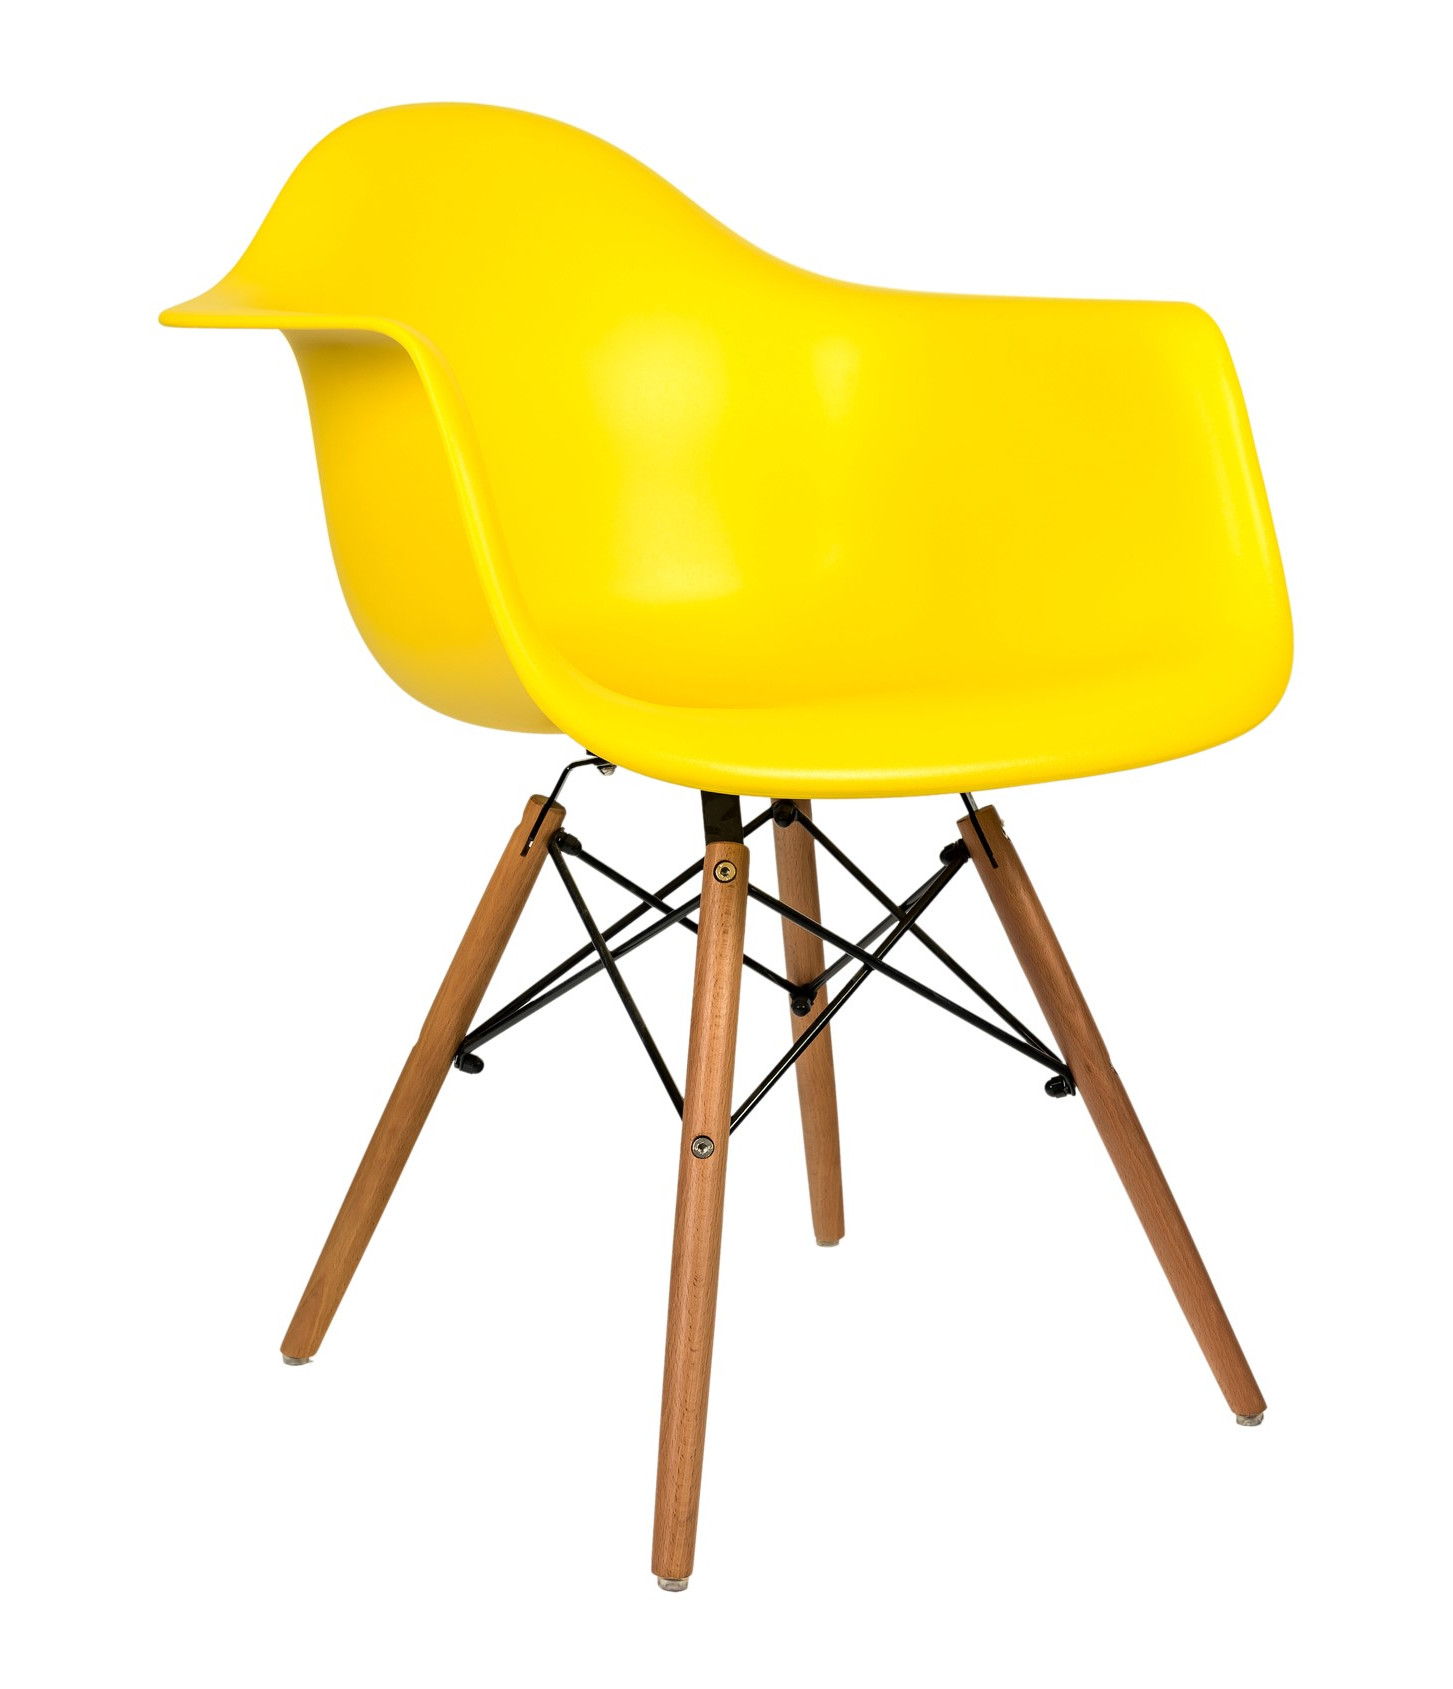 Стул-кресло Eames желтый, каркас деревянный